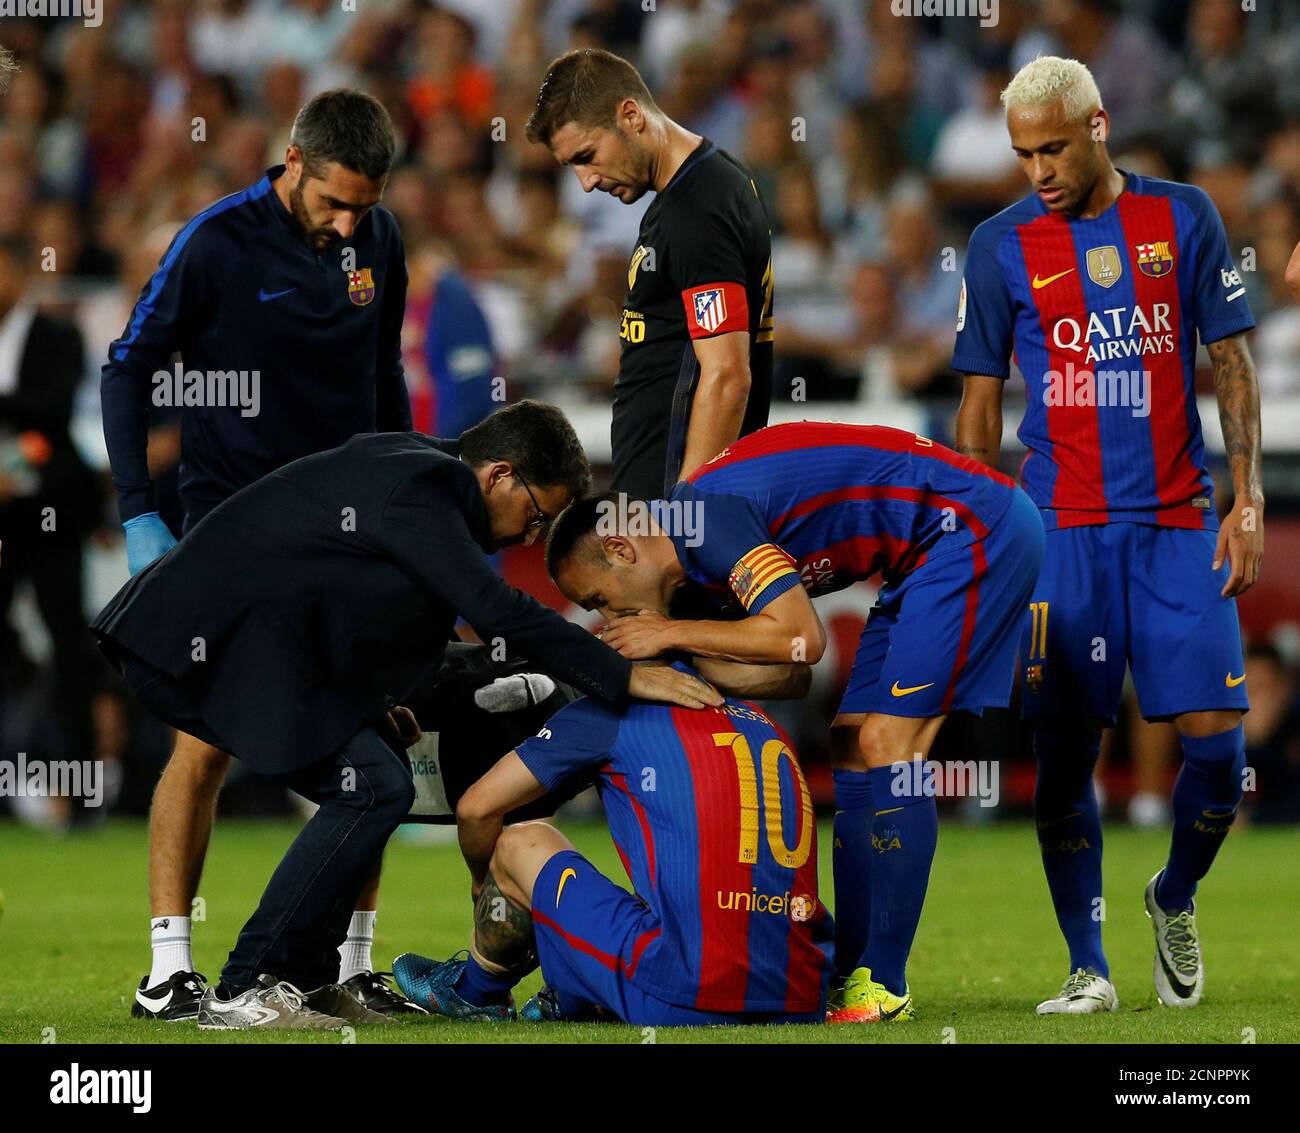 Fußball Fußball - Barcelona / Atletico Madrid - Spanisch La Liga Santander  - Camp Nou Stadion, Barcelona, Spanien - 21/09/16. Barcelonas Lionel Messi  sitzt verletzt auf dem Spielfeld, neben Andres Iniesta, Neymar